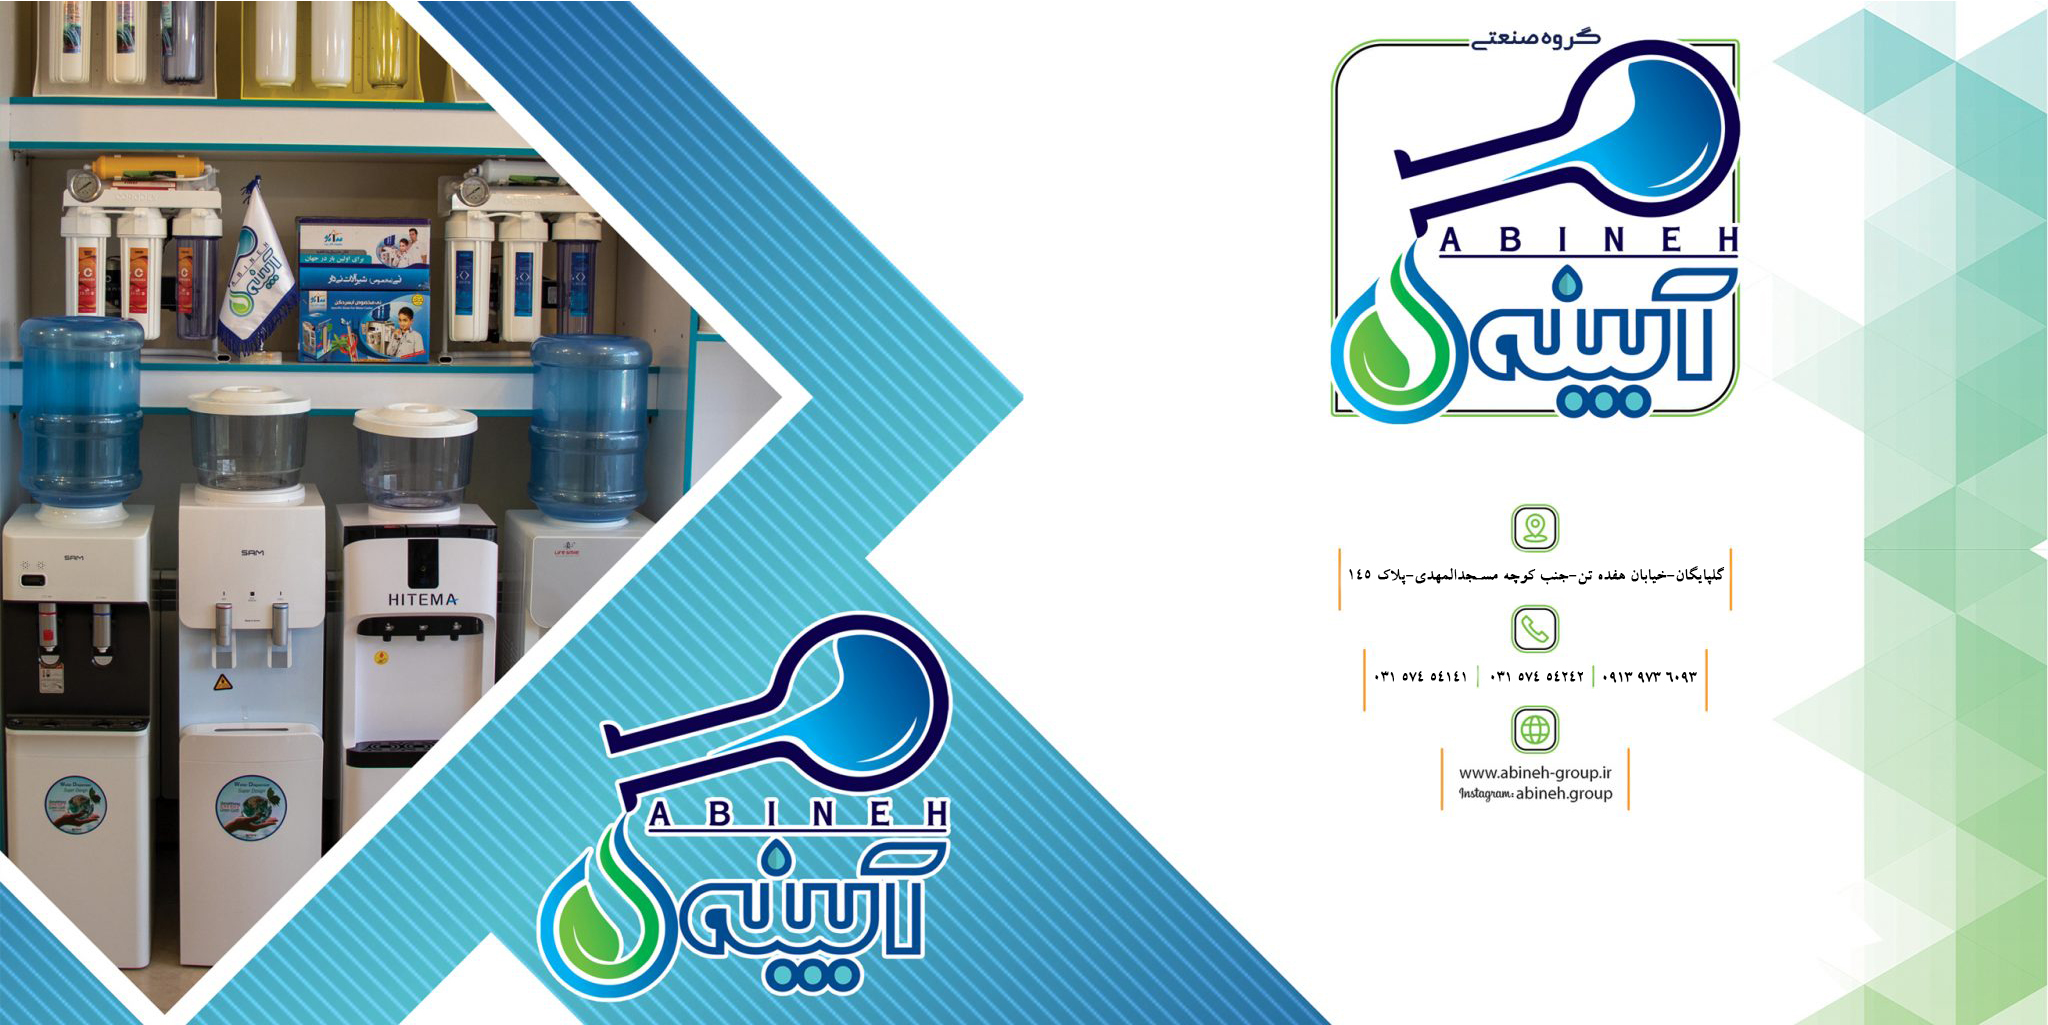 آبینه گلپایگان|دستگاه تصفیه آب خانگی و صنعتی،آب سردکن،لوازم جانبی و ...|تصفیه آب در حوزه کشاورزی